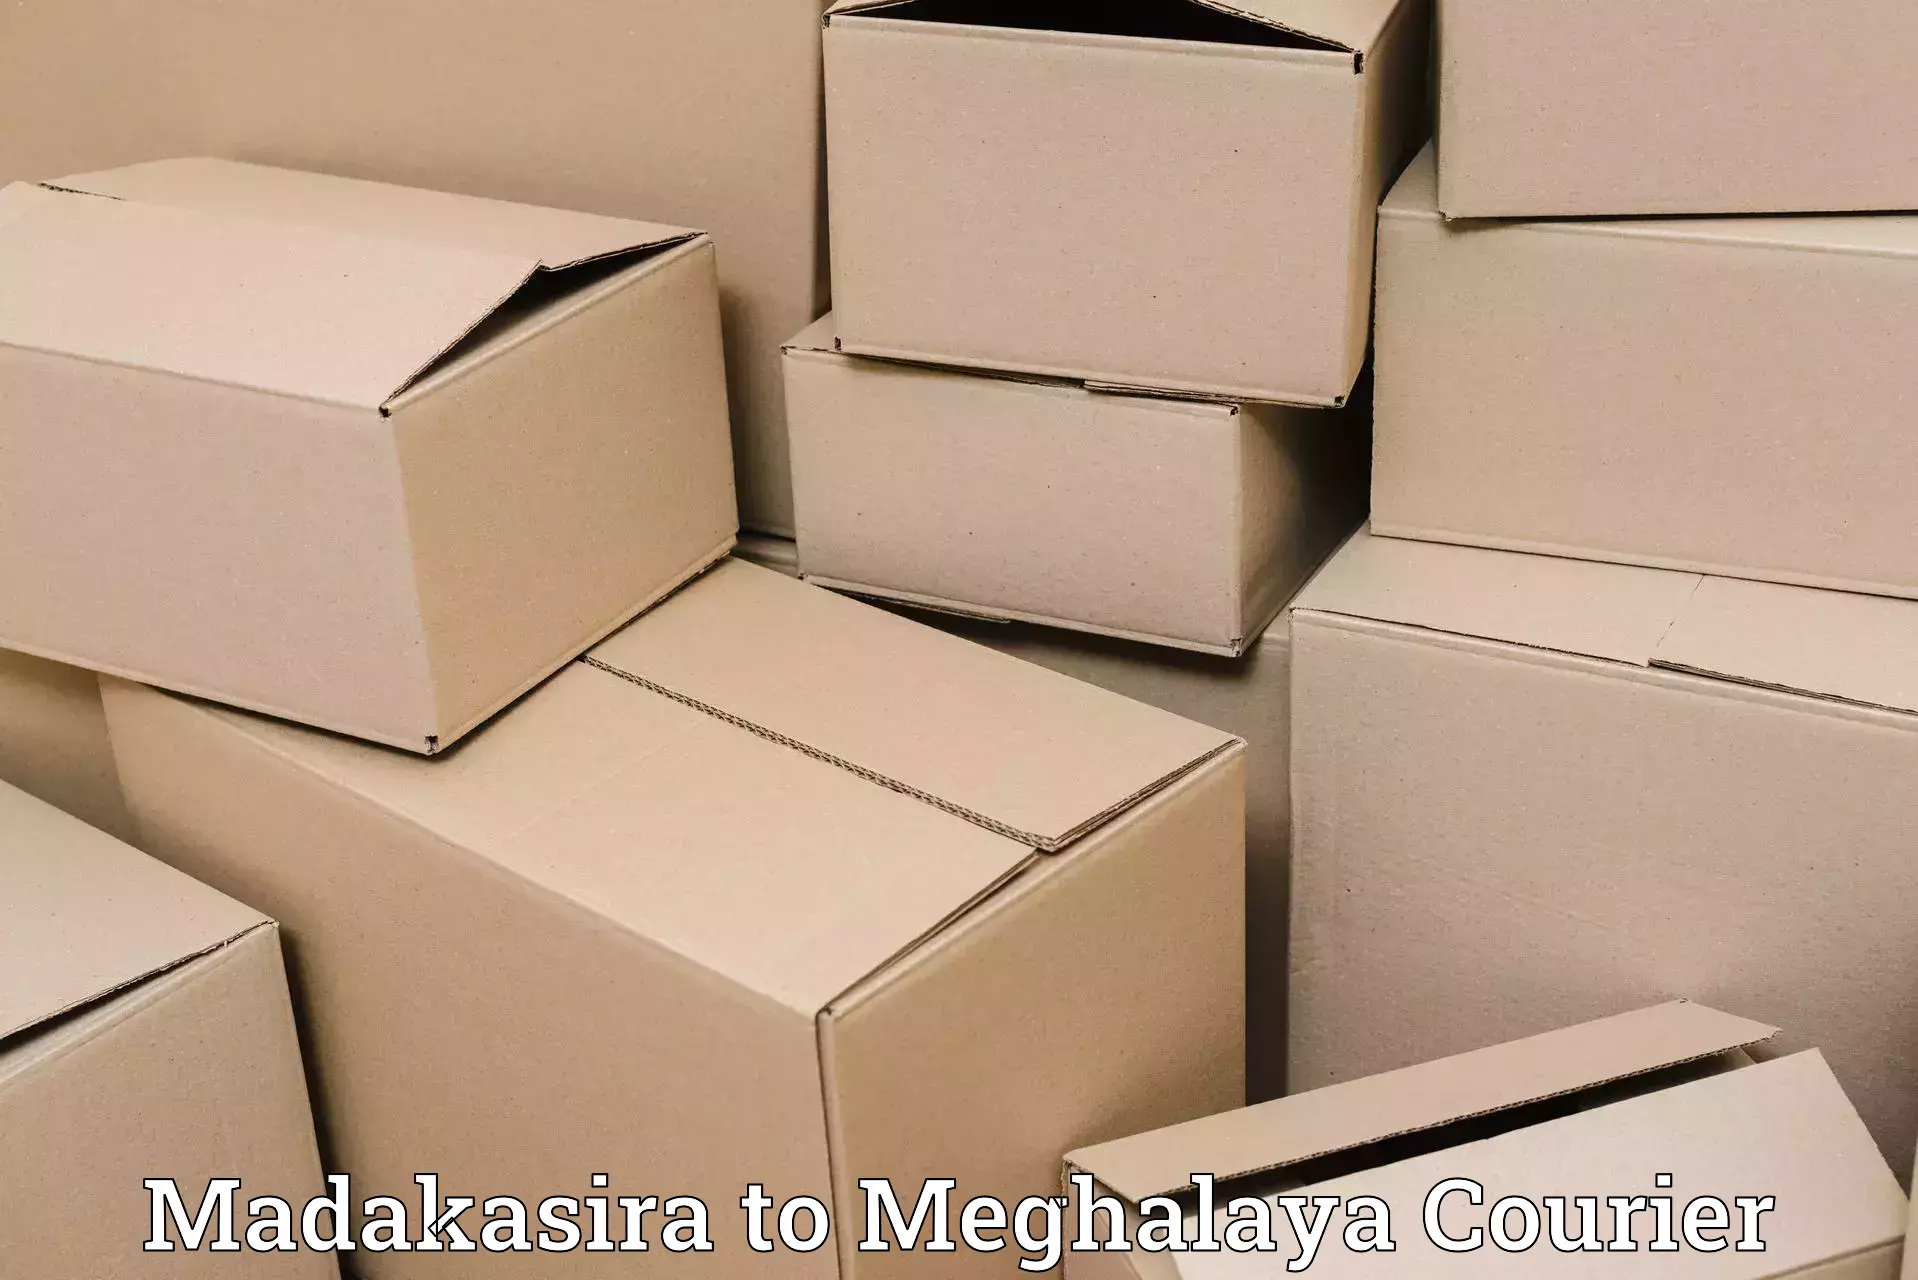 Bulk shipment Madakasira to East Garo Hills